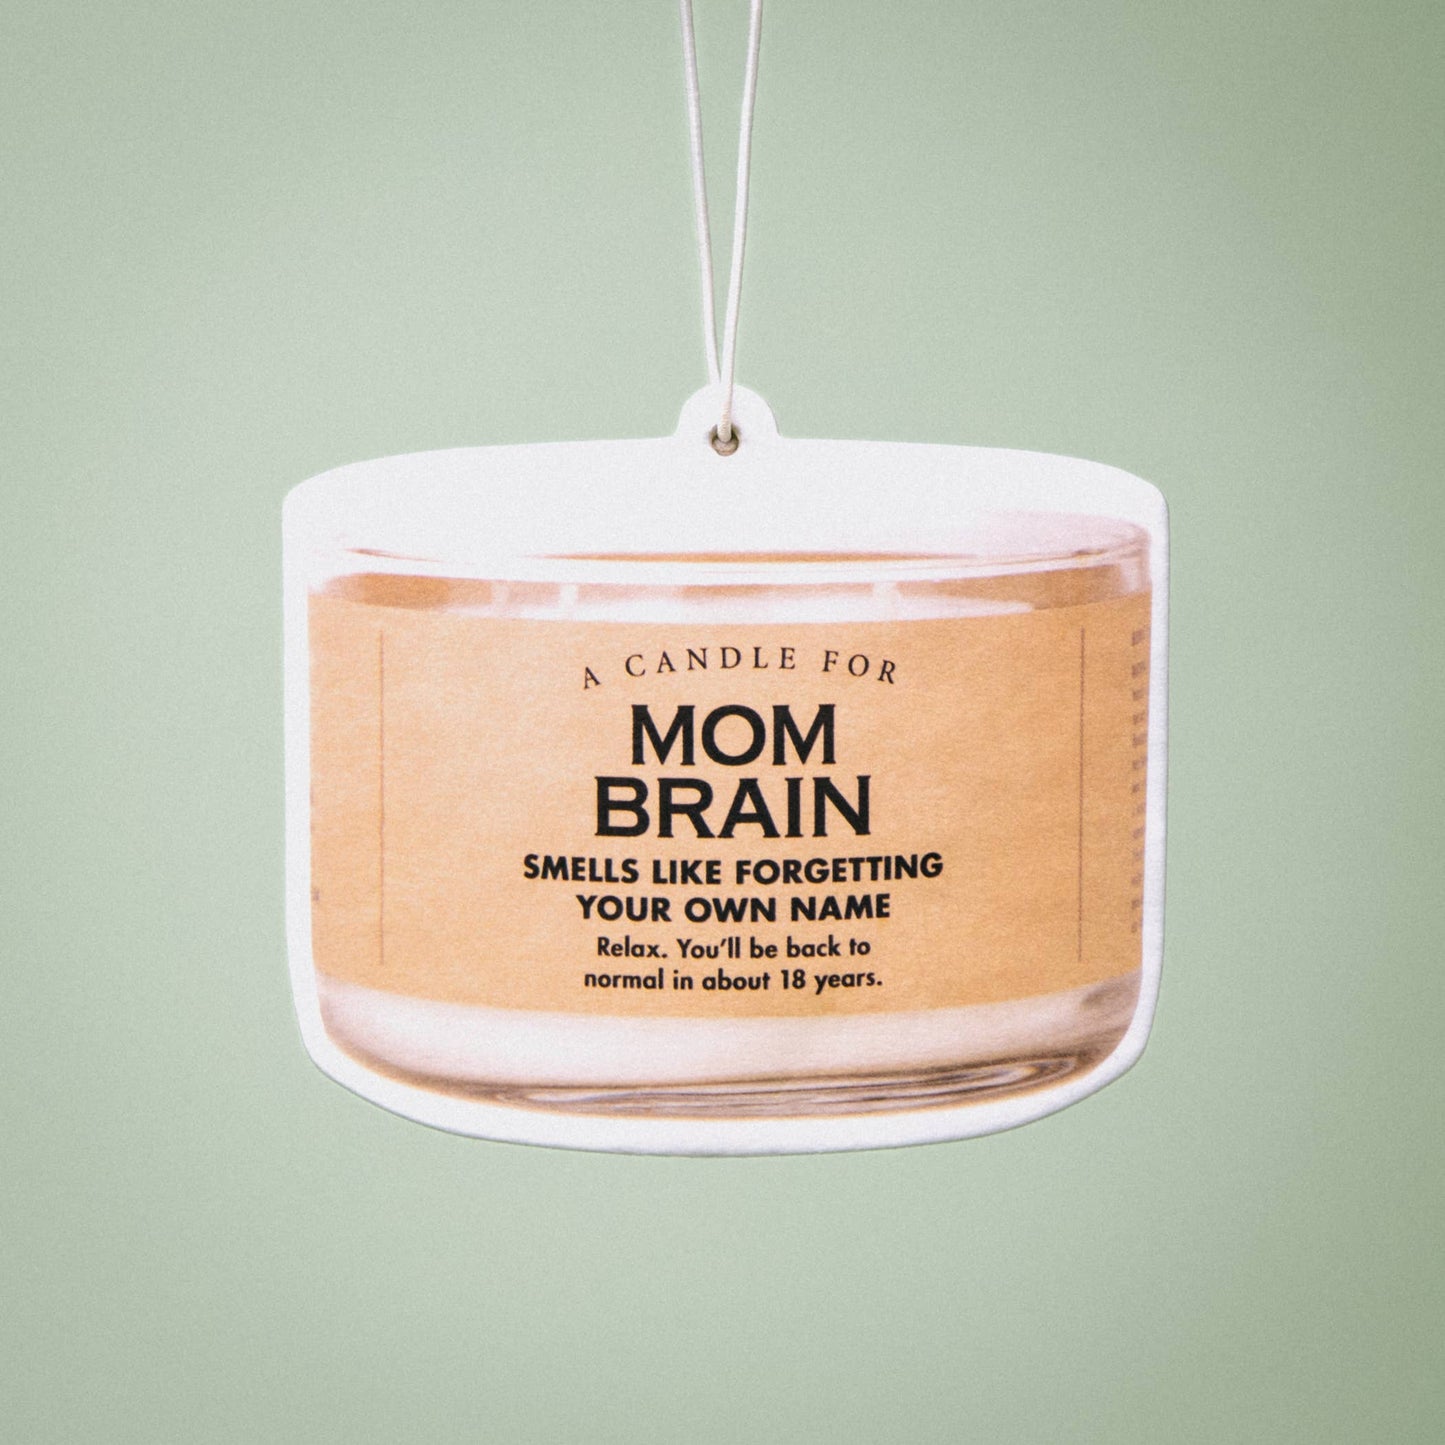 Mom Brain Air Freshener | Funny Car Air Freshener